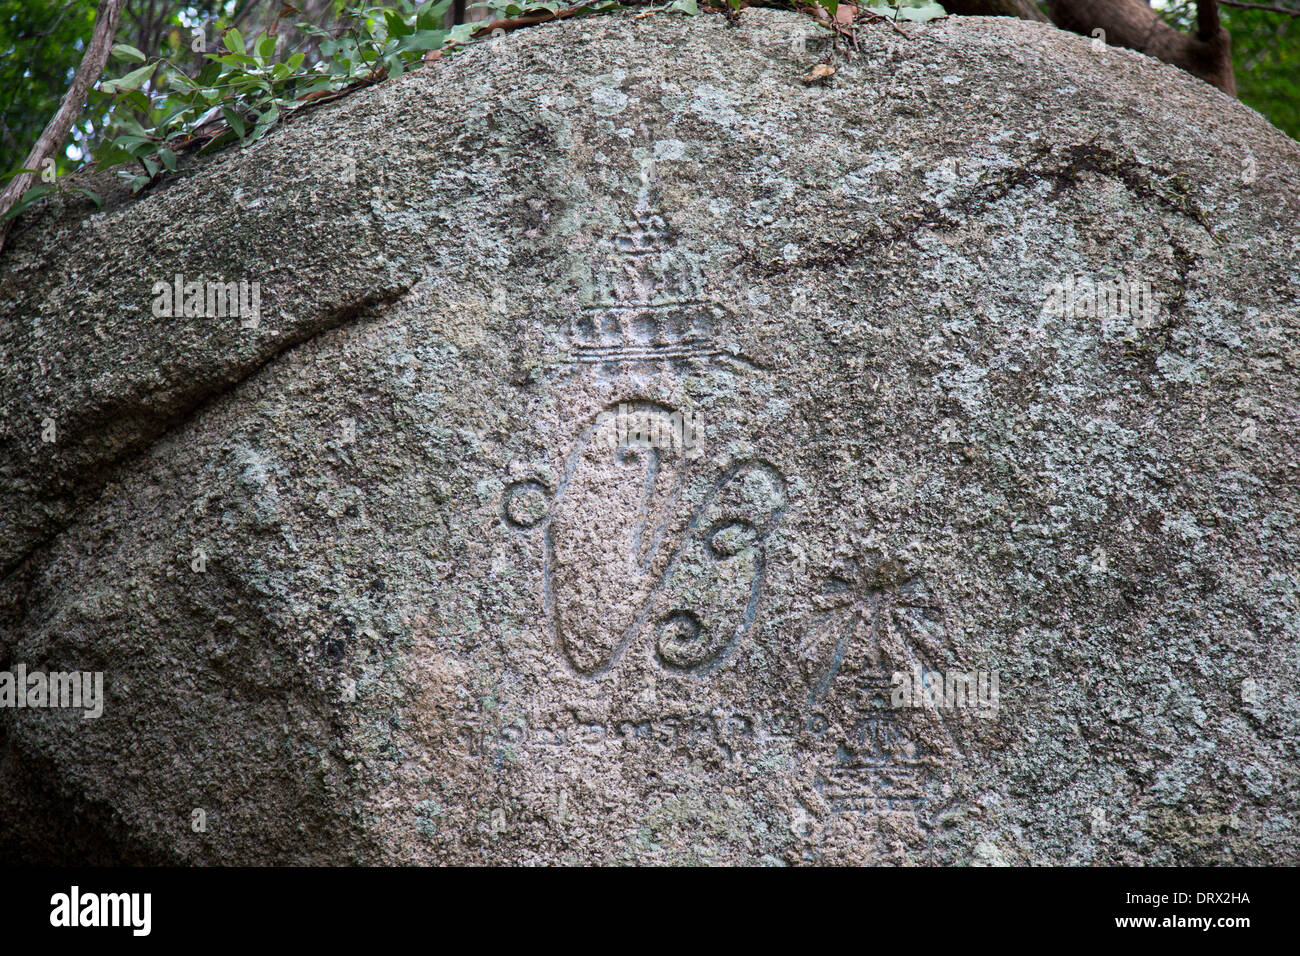 Inscription of King Prachathimpok, Rama VII, Nam Tok Than Sadet waterfall, Ko Pha Ngan island, Thailand Stock Photo